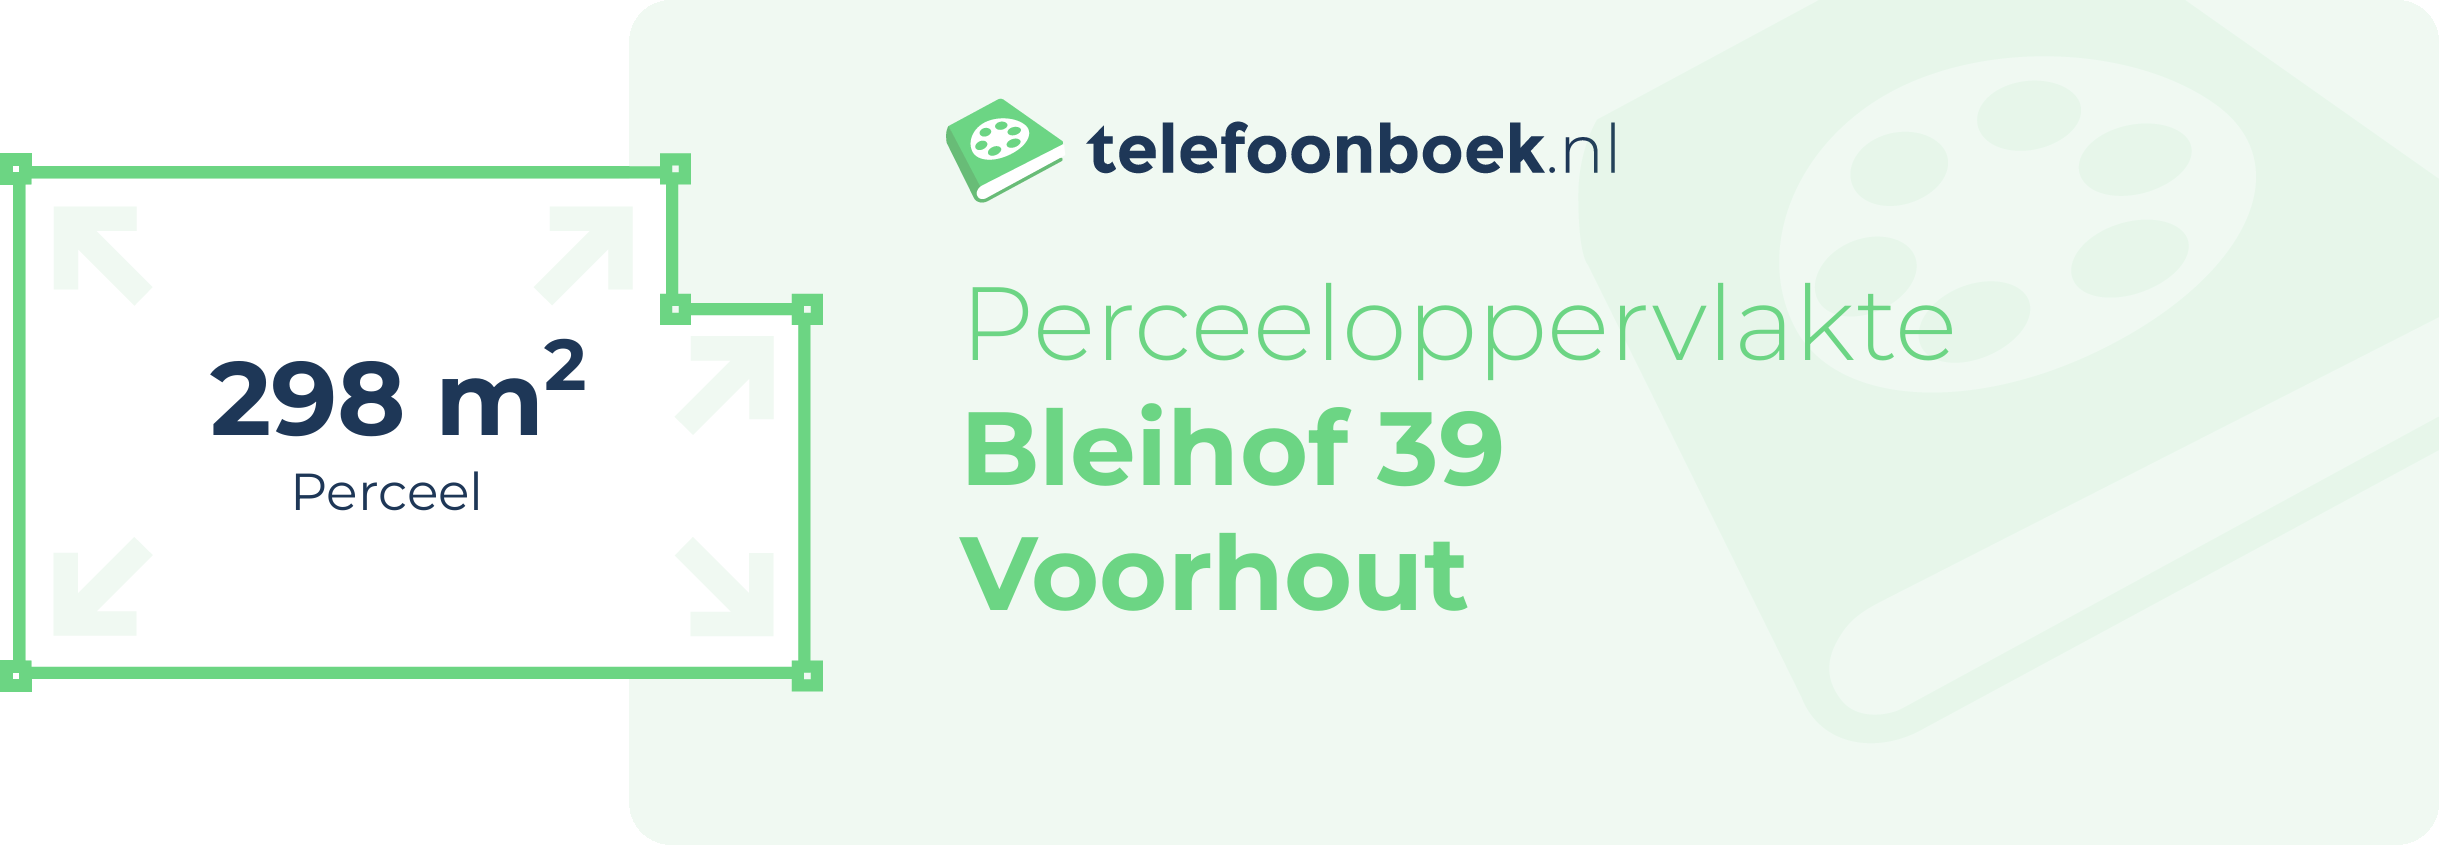 Perceeloppervlakte Bleihof 39 Voorhout